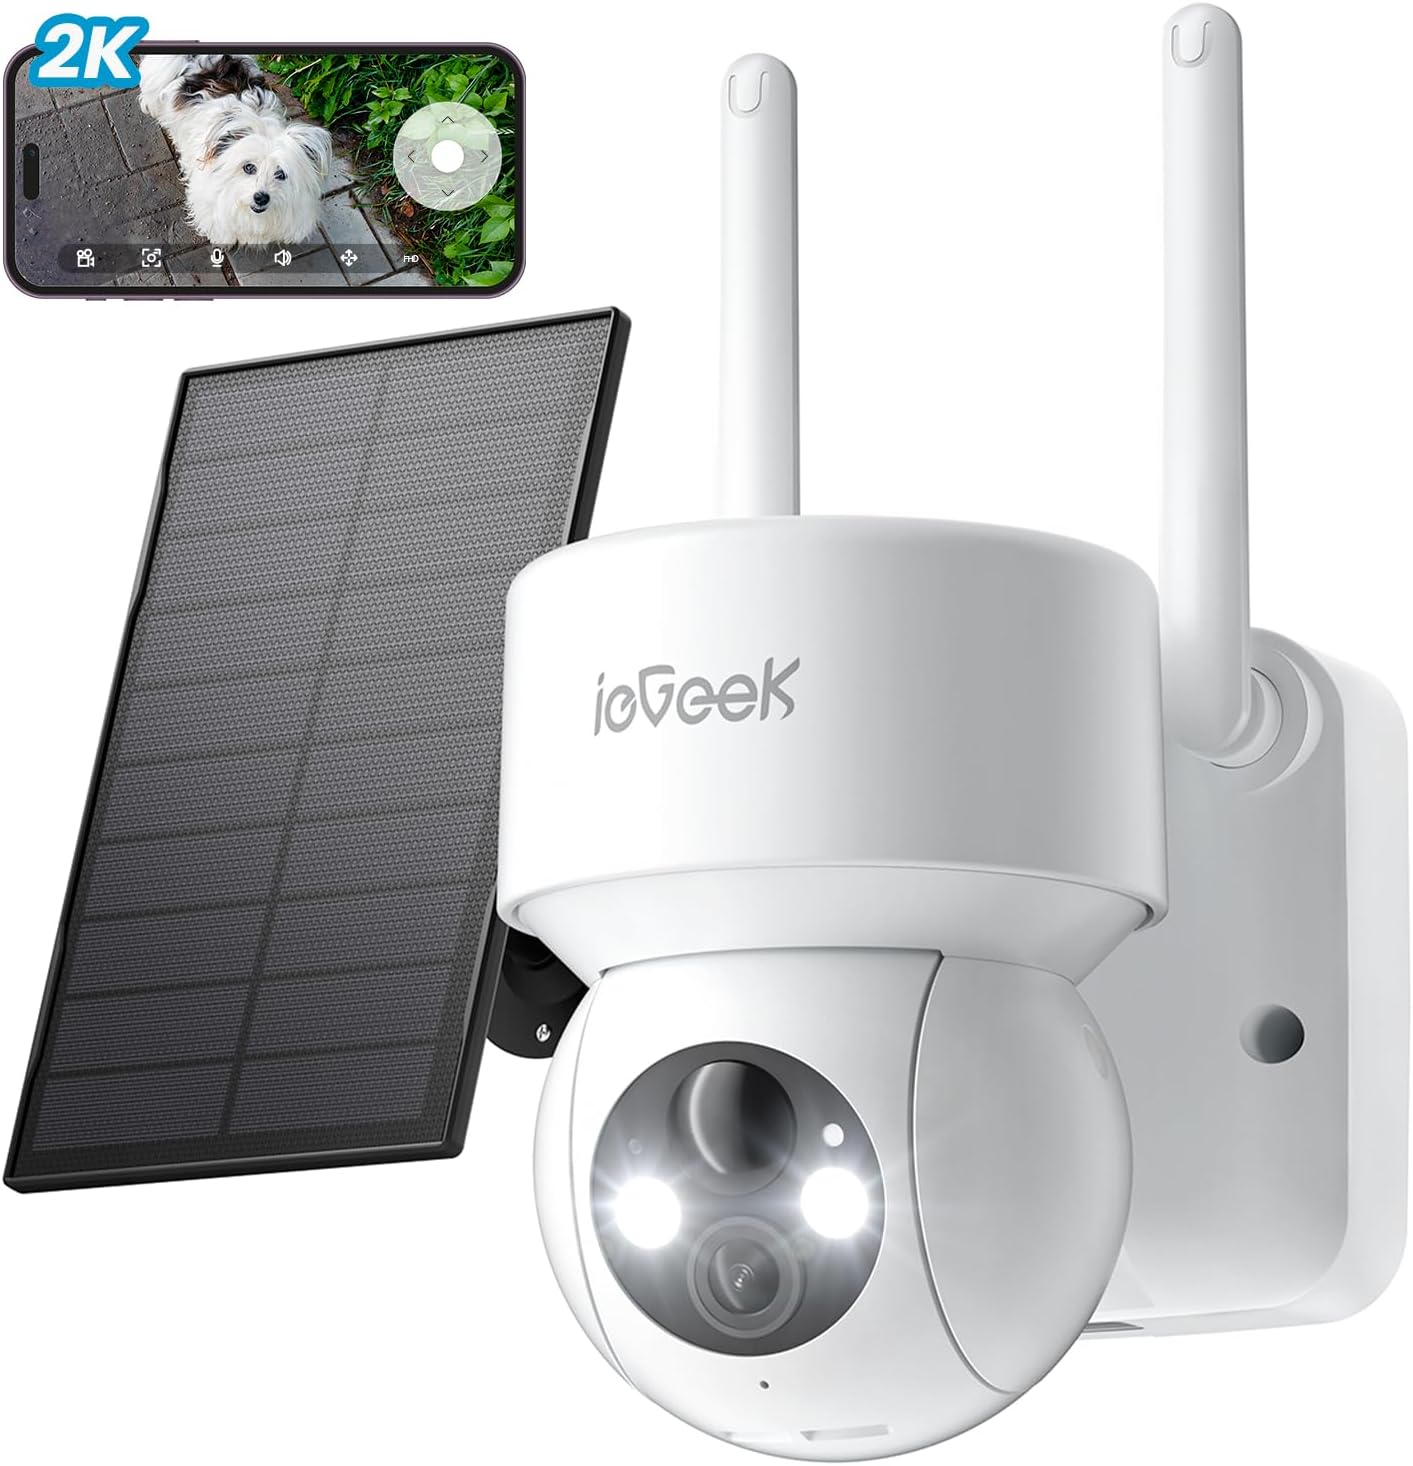 ieGeek 360° Caméra Surveillance WiFi Exterieure Vision Nocturne Couleur  Sirène Caméra IPAudio Bidirectionnel Détection de